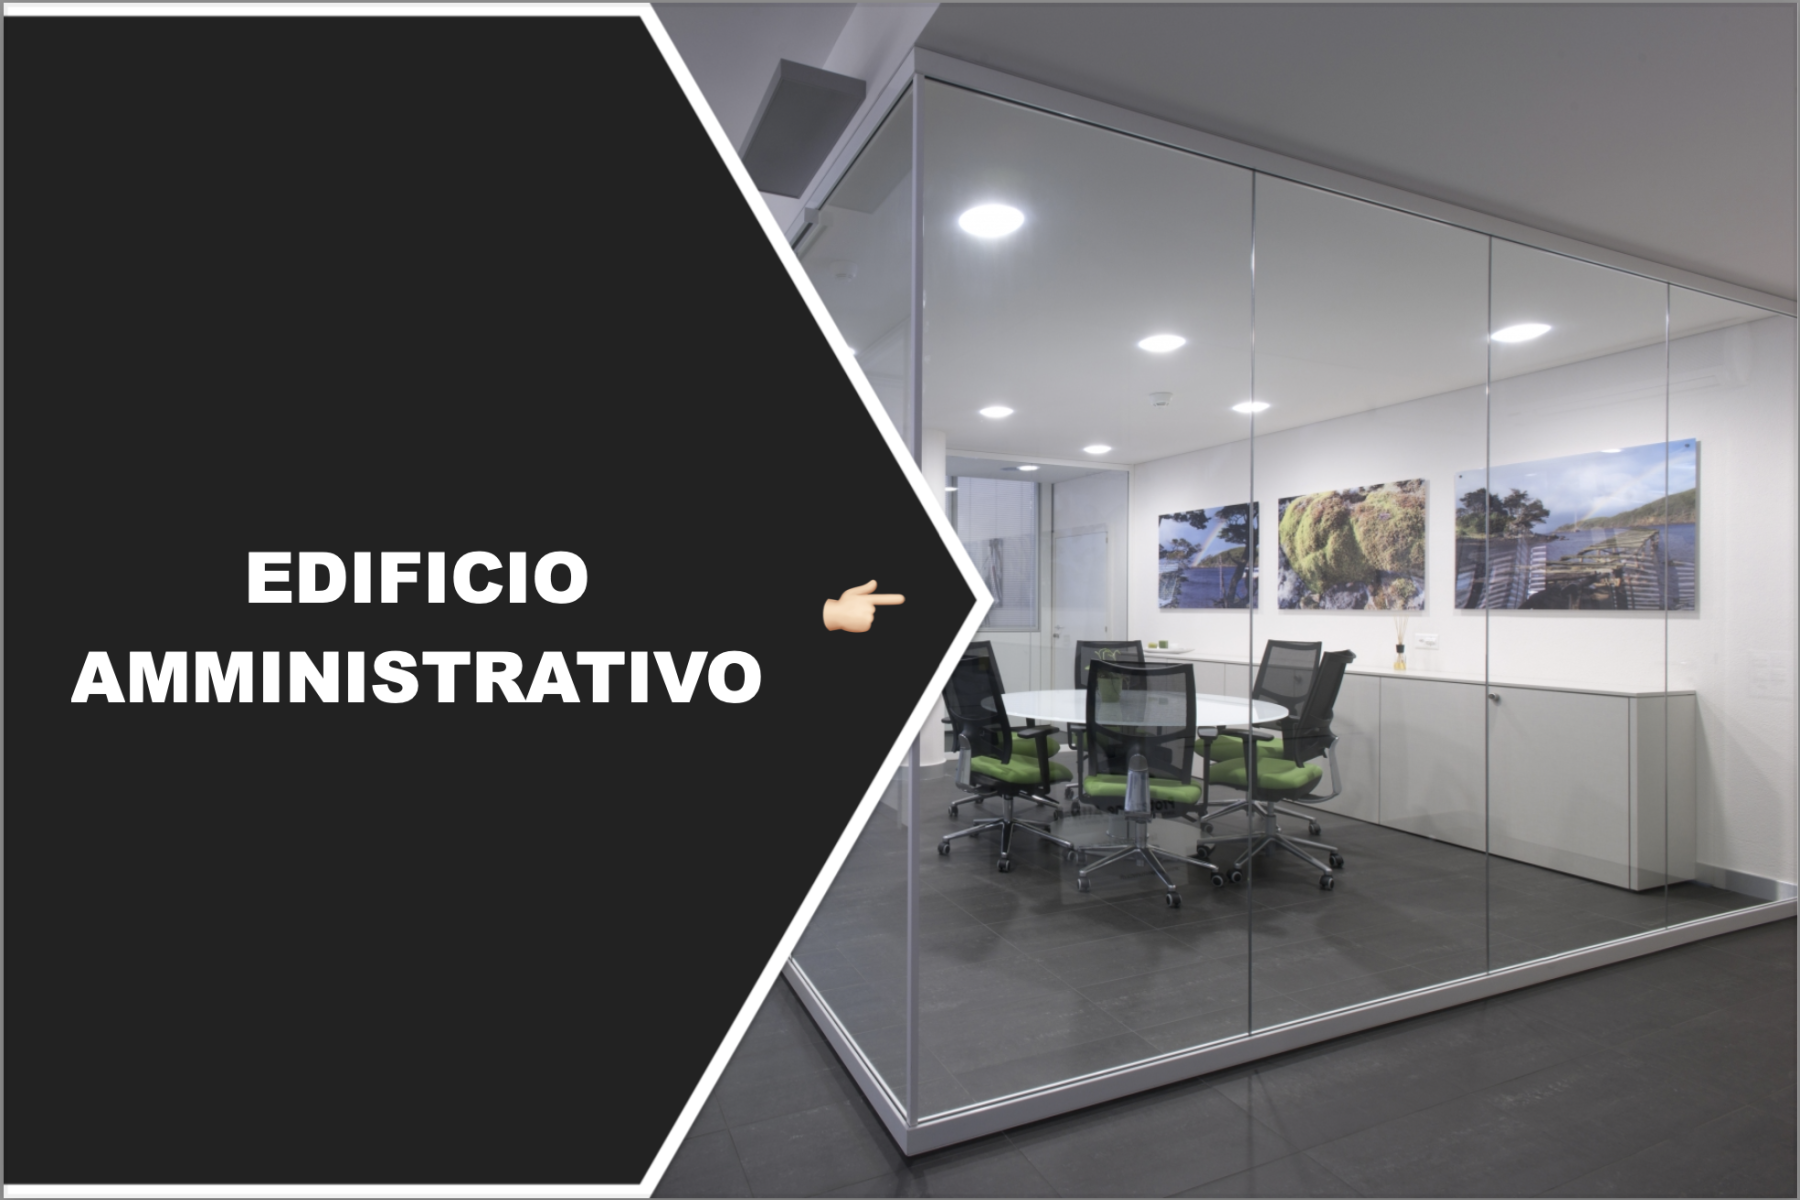 Edificio-Amministrativo_start